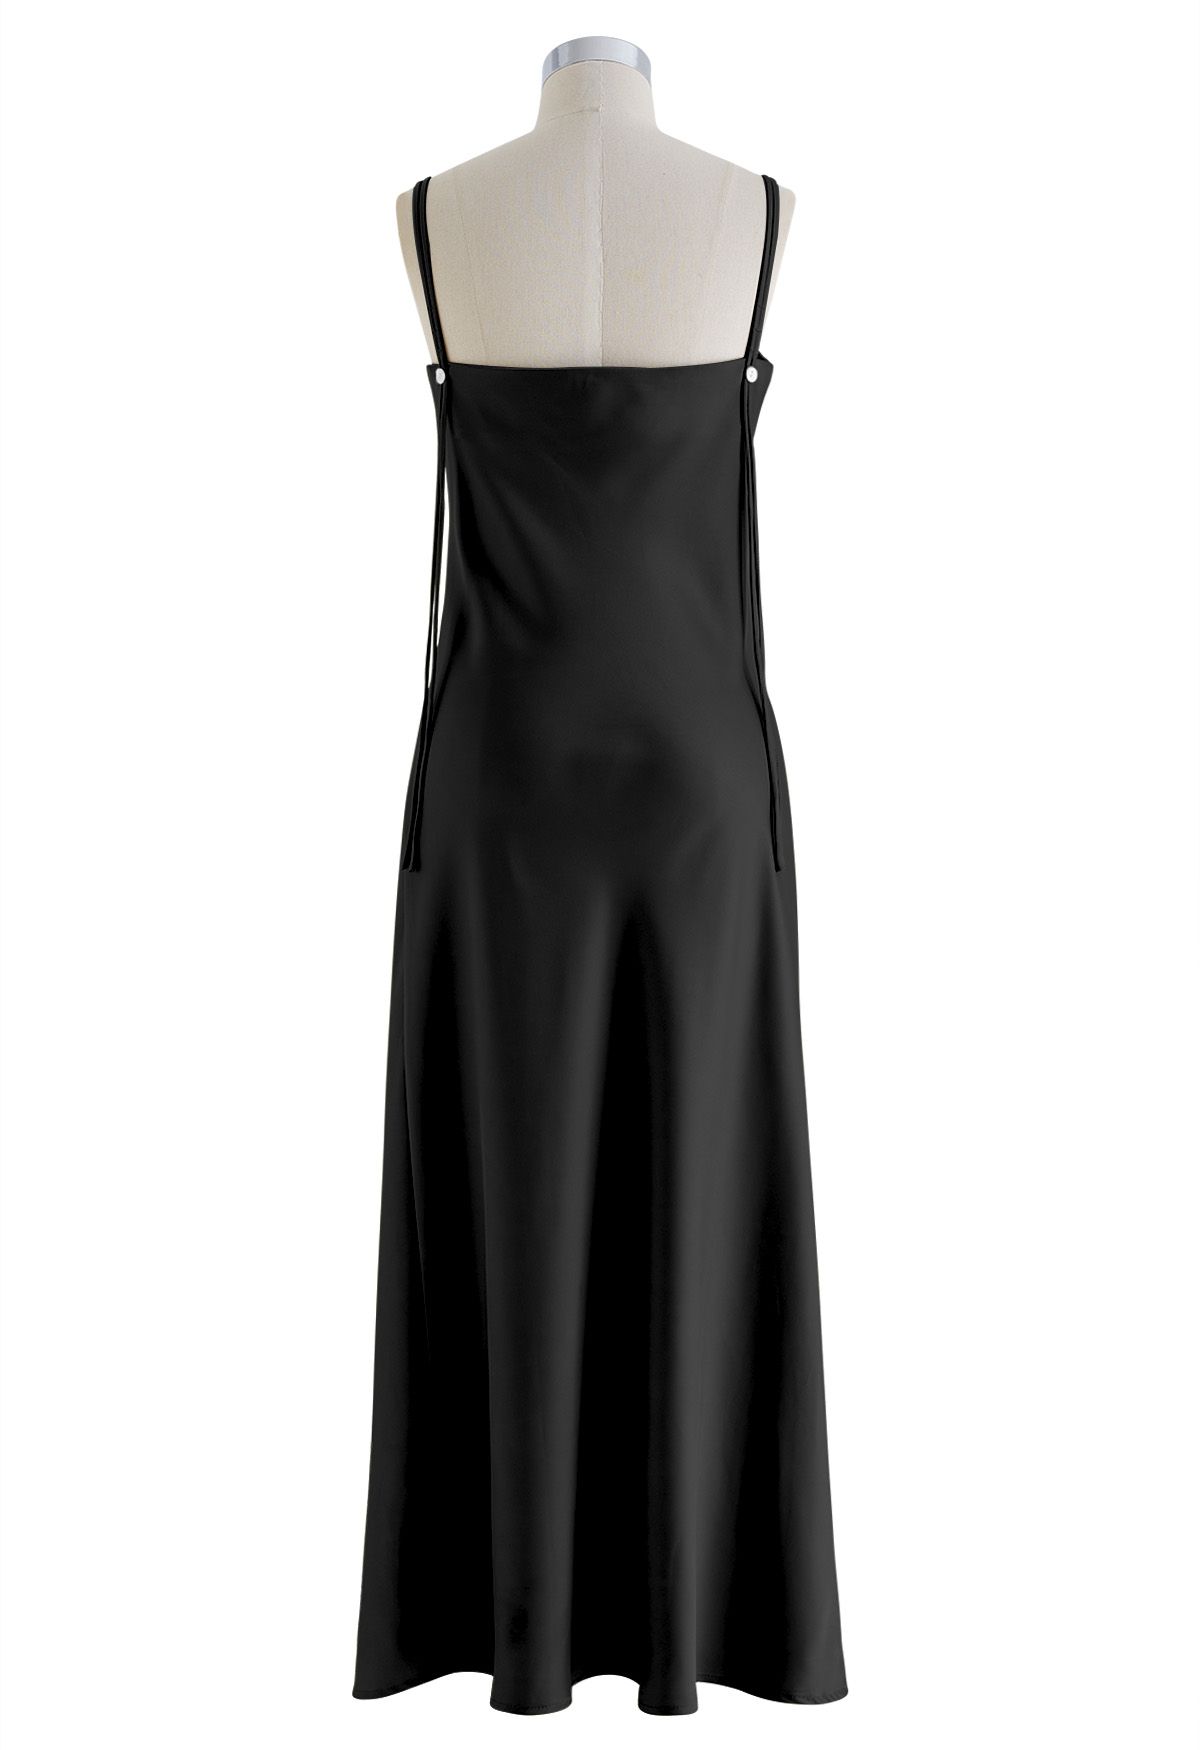 Double Straps Satin Cami Dress in Black